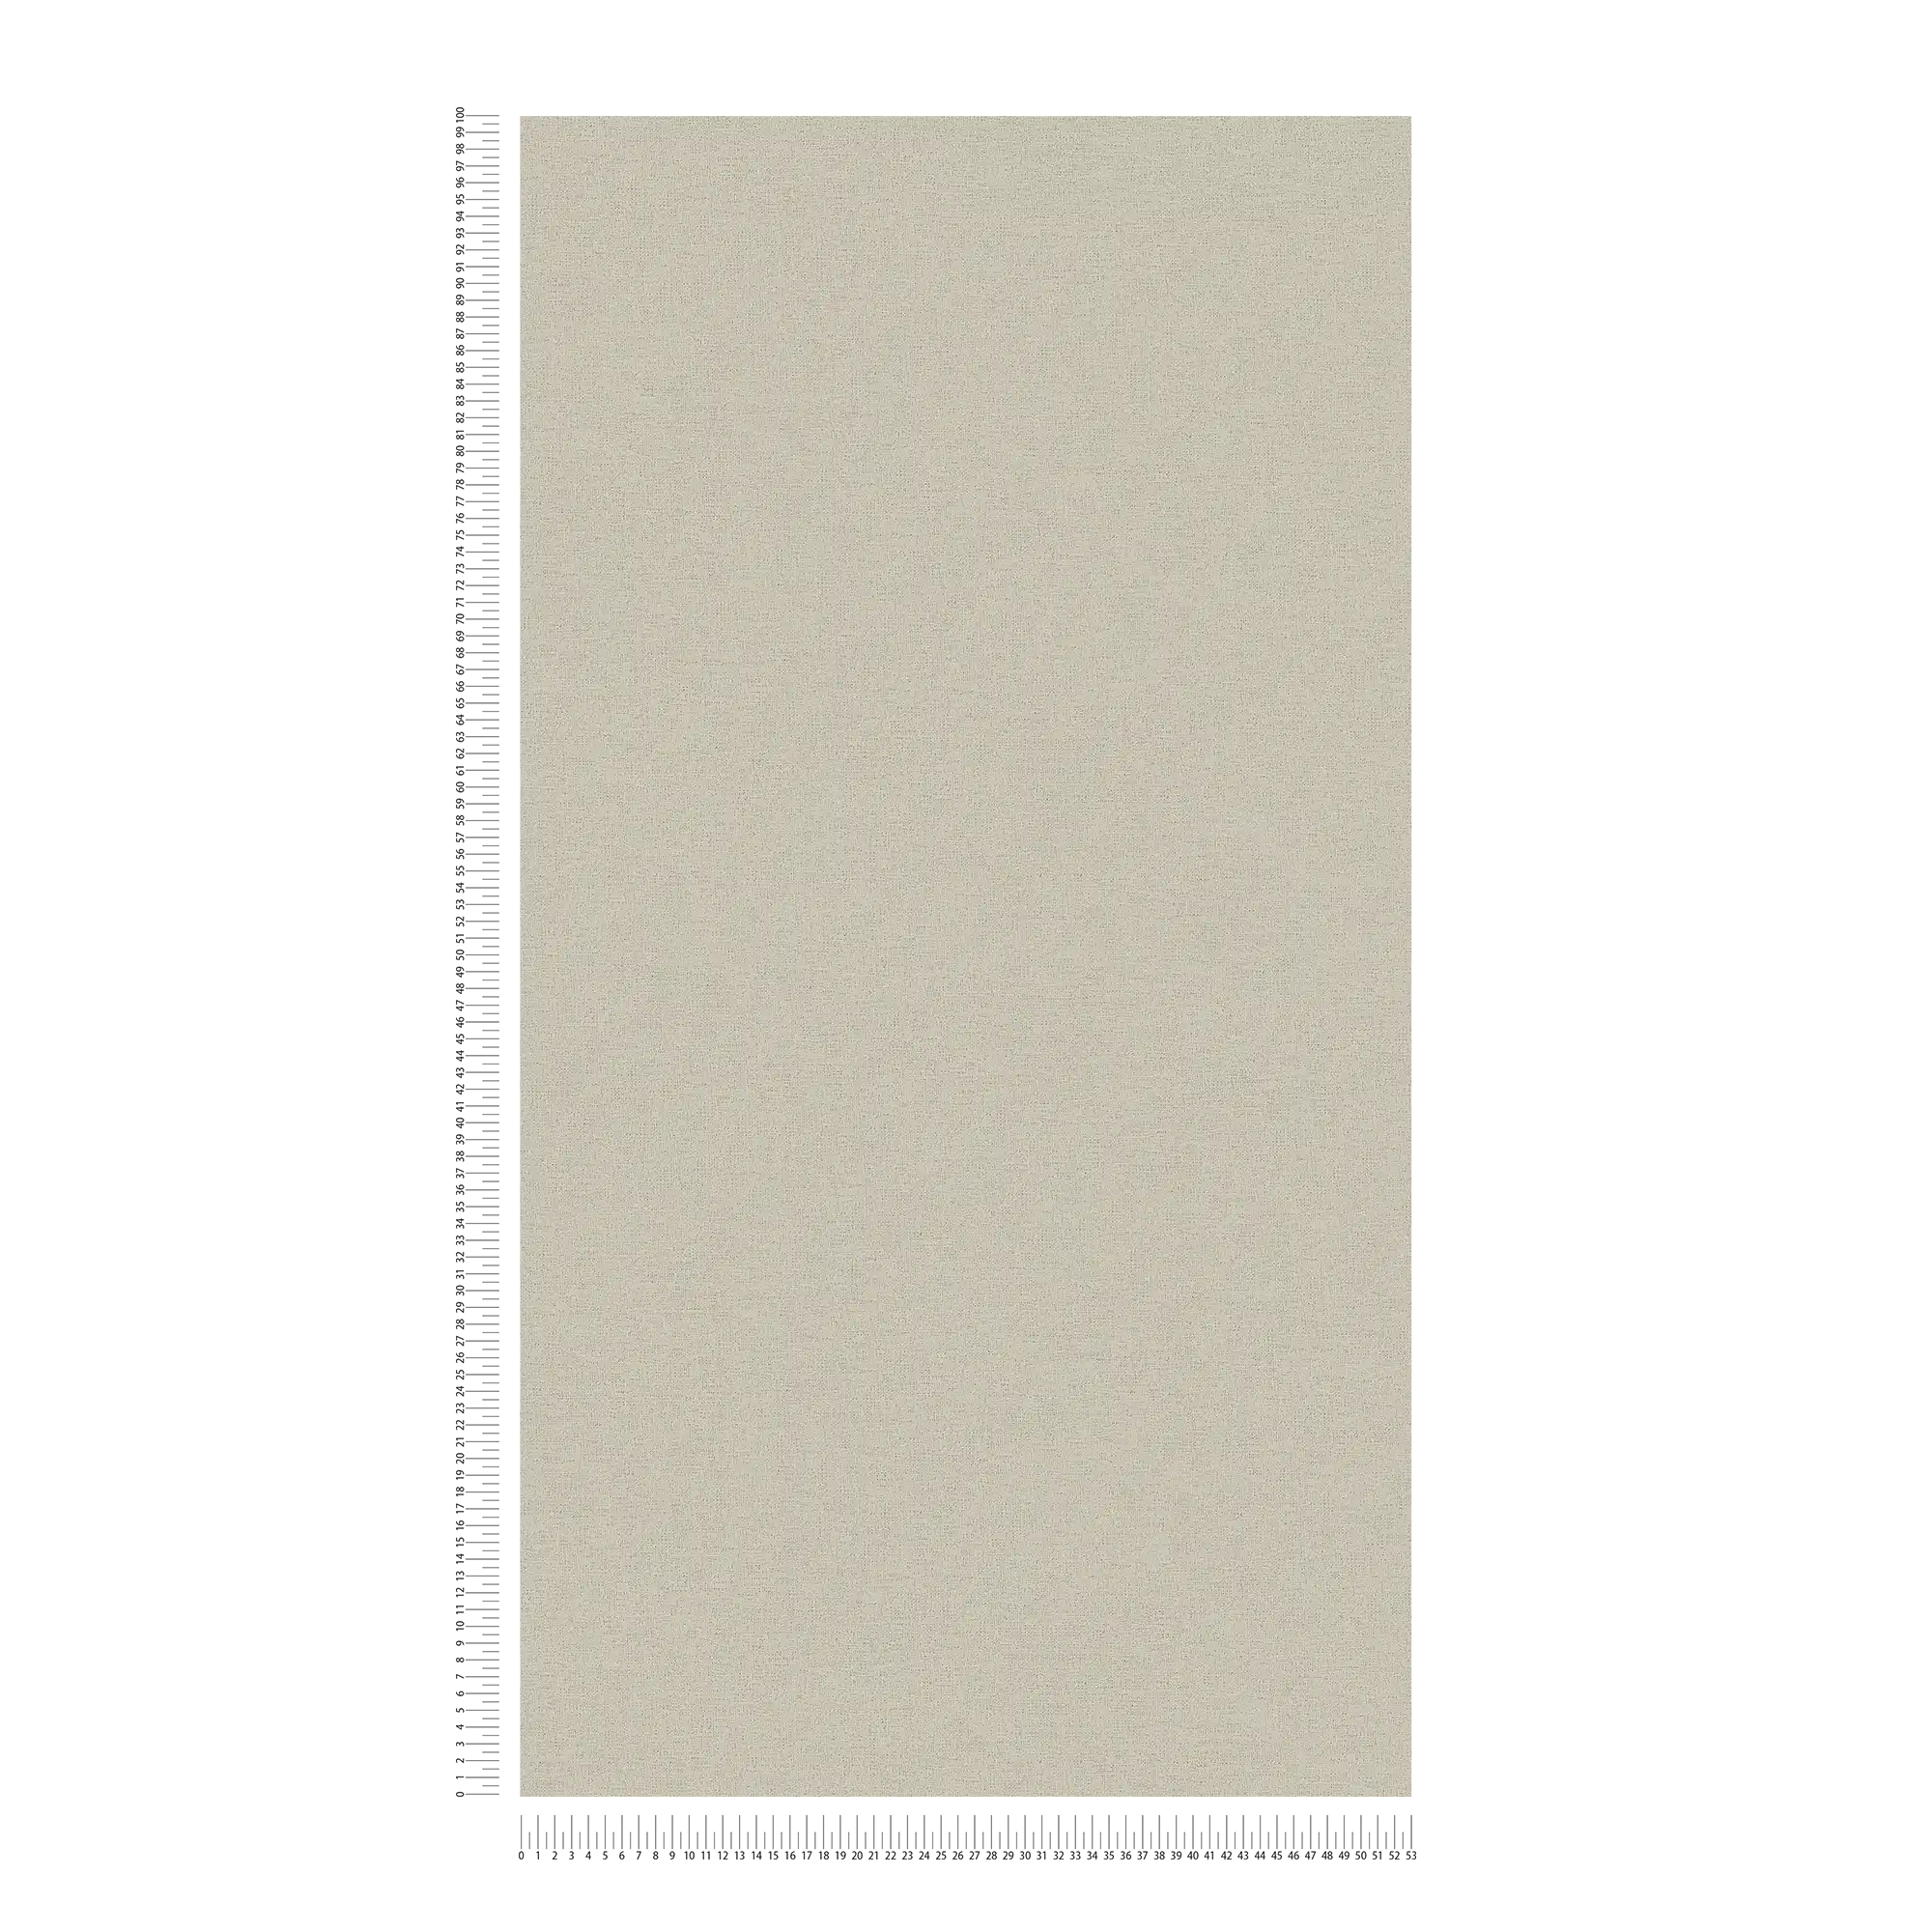             Papel pintado de aspecto de lino beige con estructura textil moteada
        